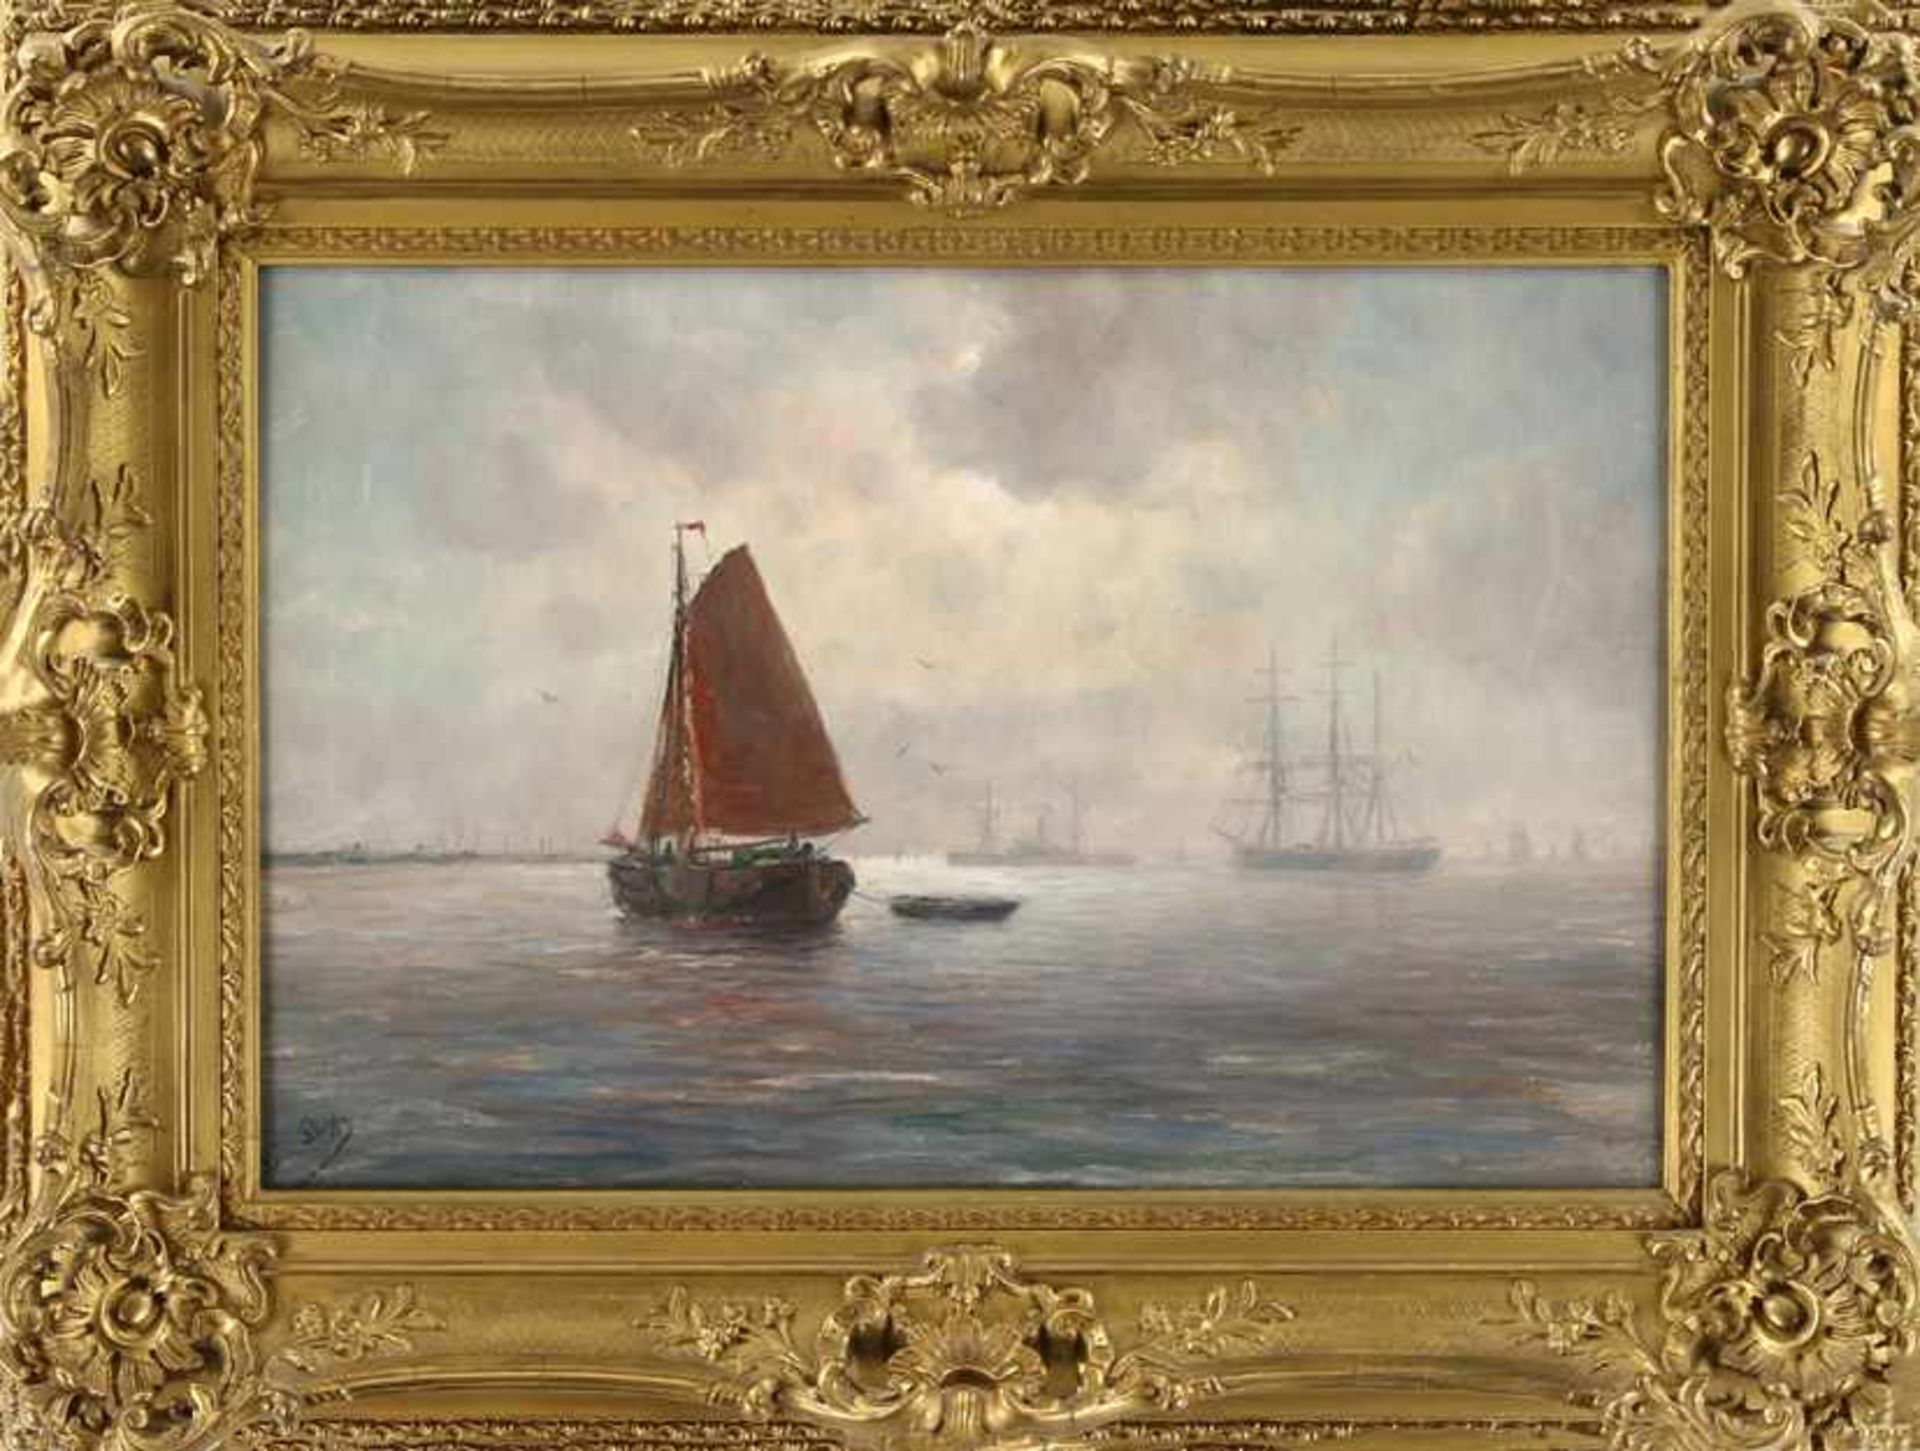 Romain Steppe (1859-1927), schepen op de Schelde in de namiddag, olieverf op doek, gesigneerd - 40 x